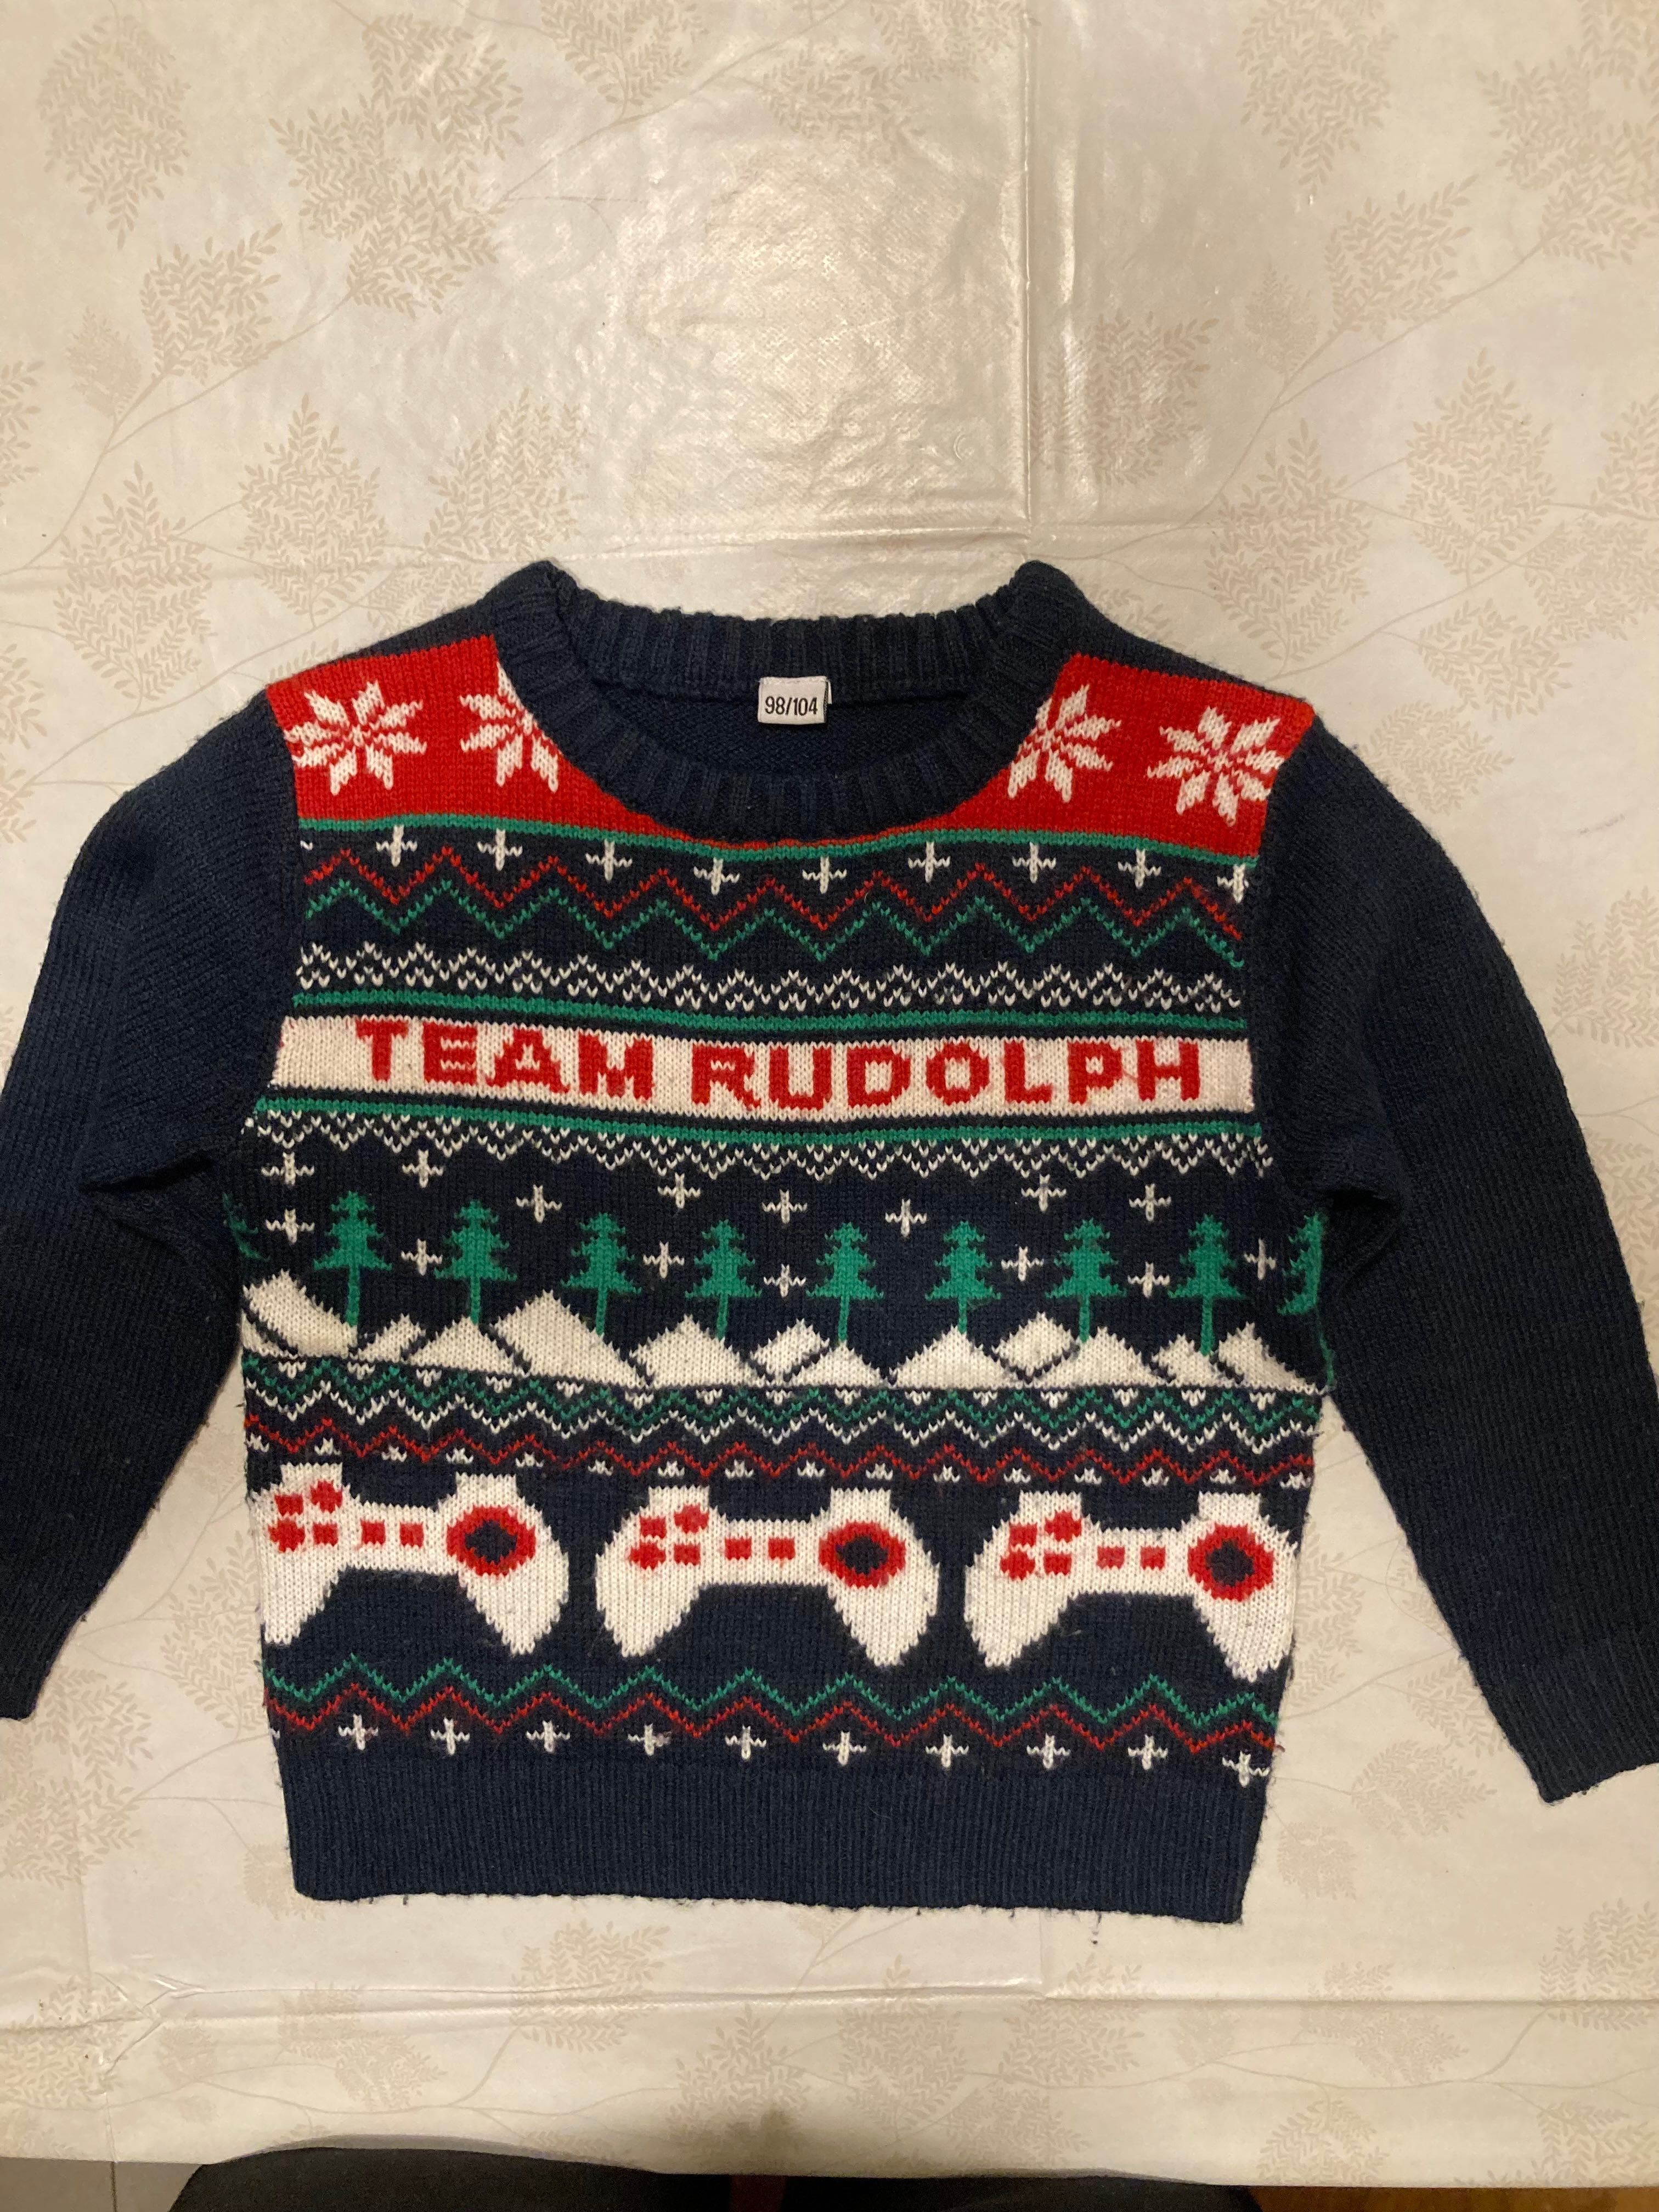 Sweter świąteczny Team Rudolph, rozm. 98/104